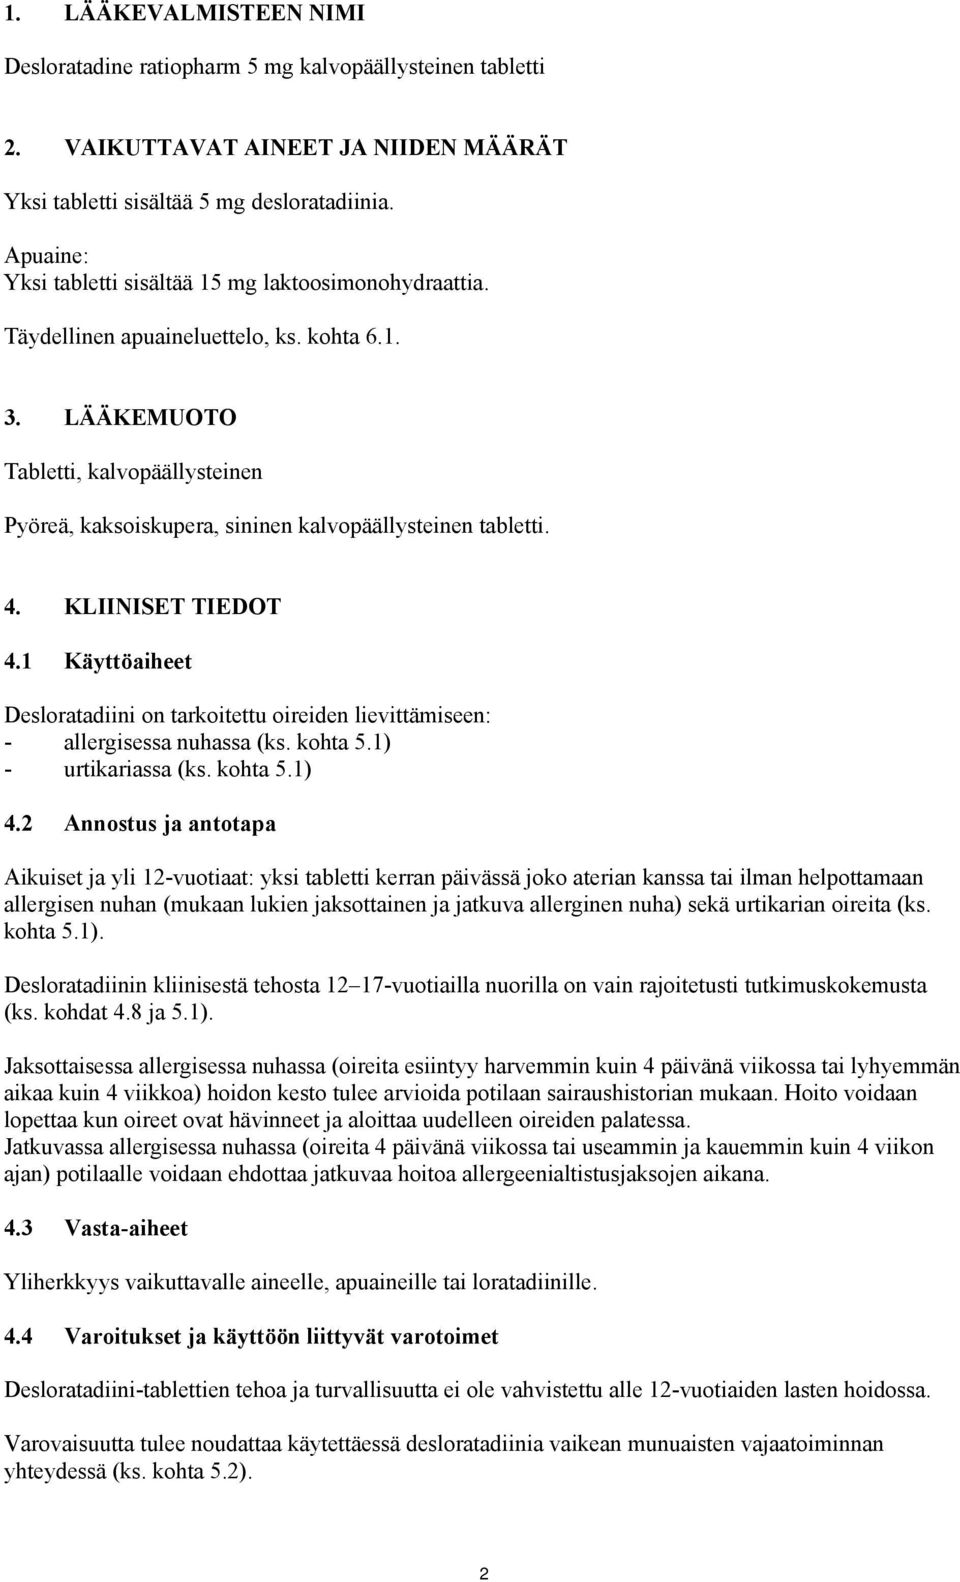 LÄÄKEMUOTO Tabletti, kalvopäällysteinen Pyöreä, kaksoiskupera, sininen kalvopäällysteinen tabletti. 4. KLIINISET TIEDOT 4.